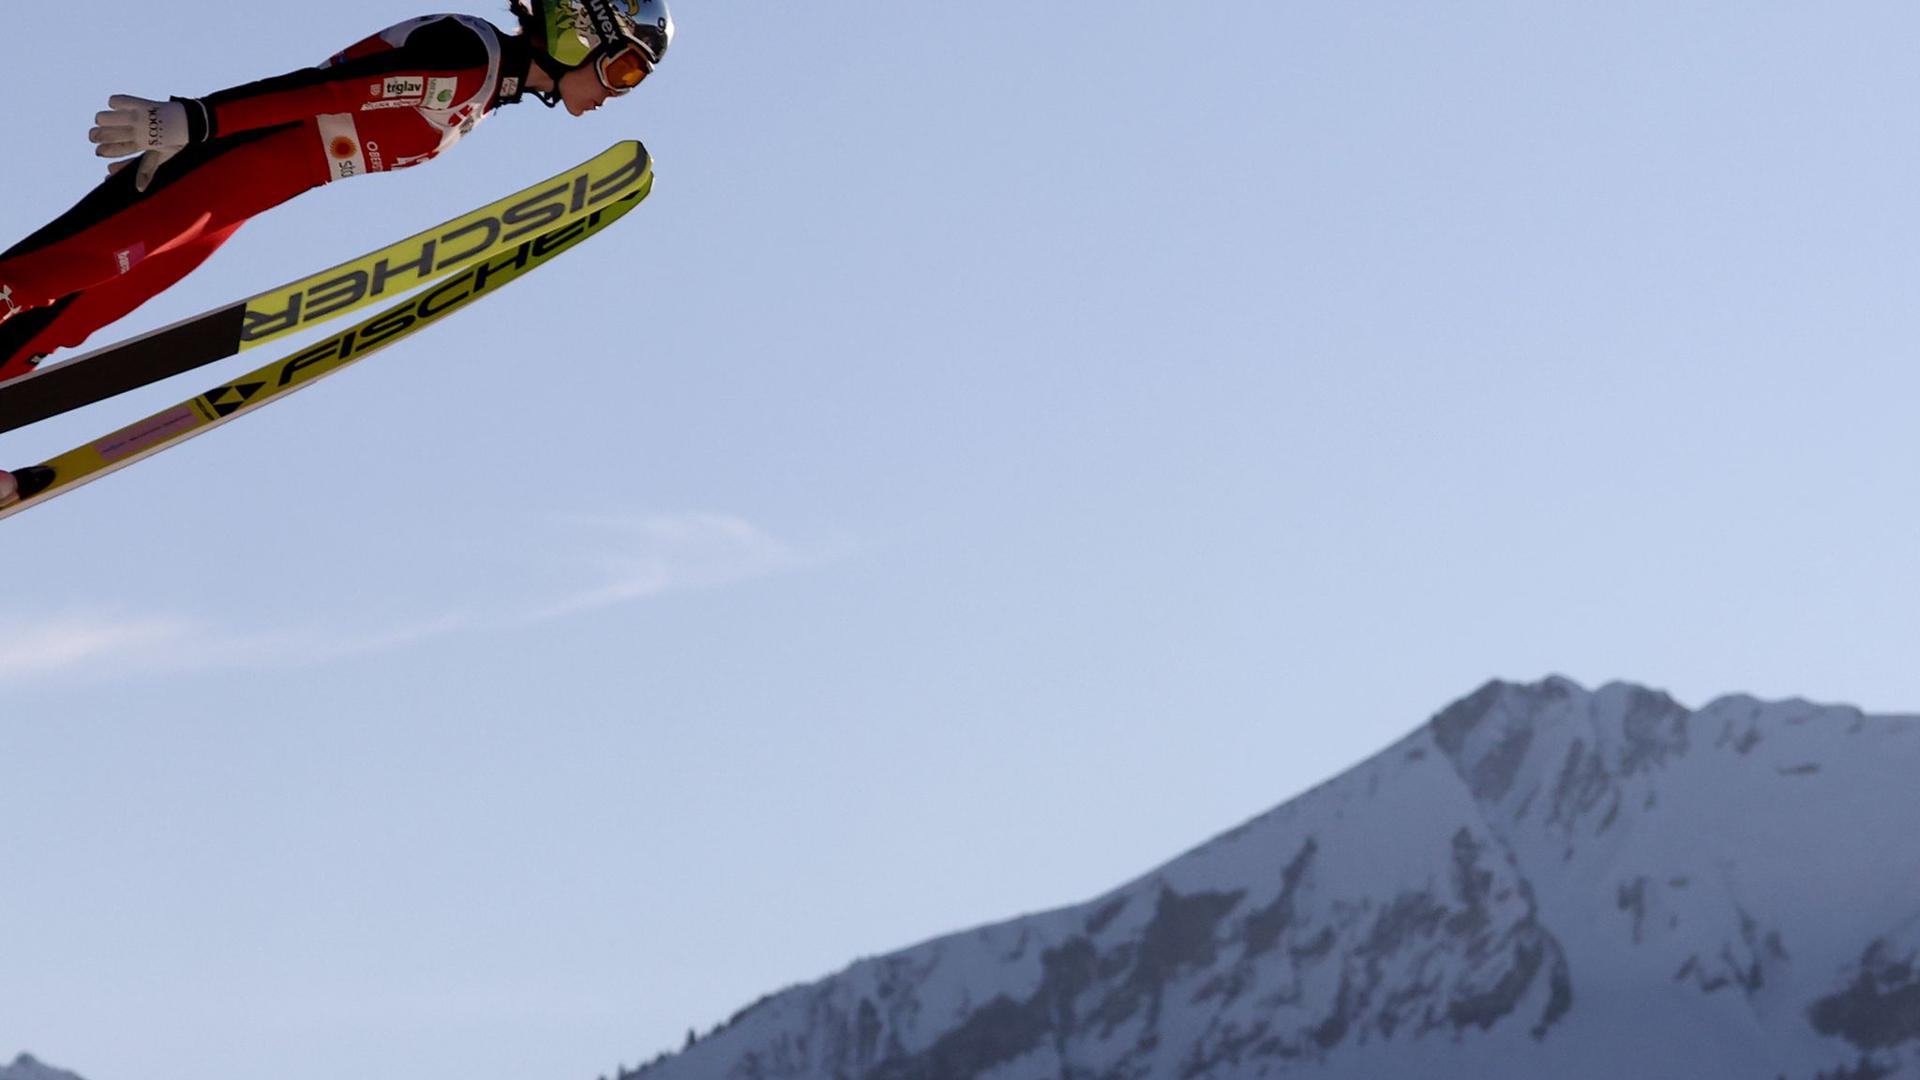 Bei der nordischen Ski-WM feiern die Frauen Premiere von der Großschanze.